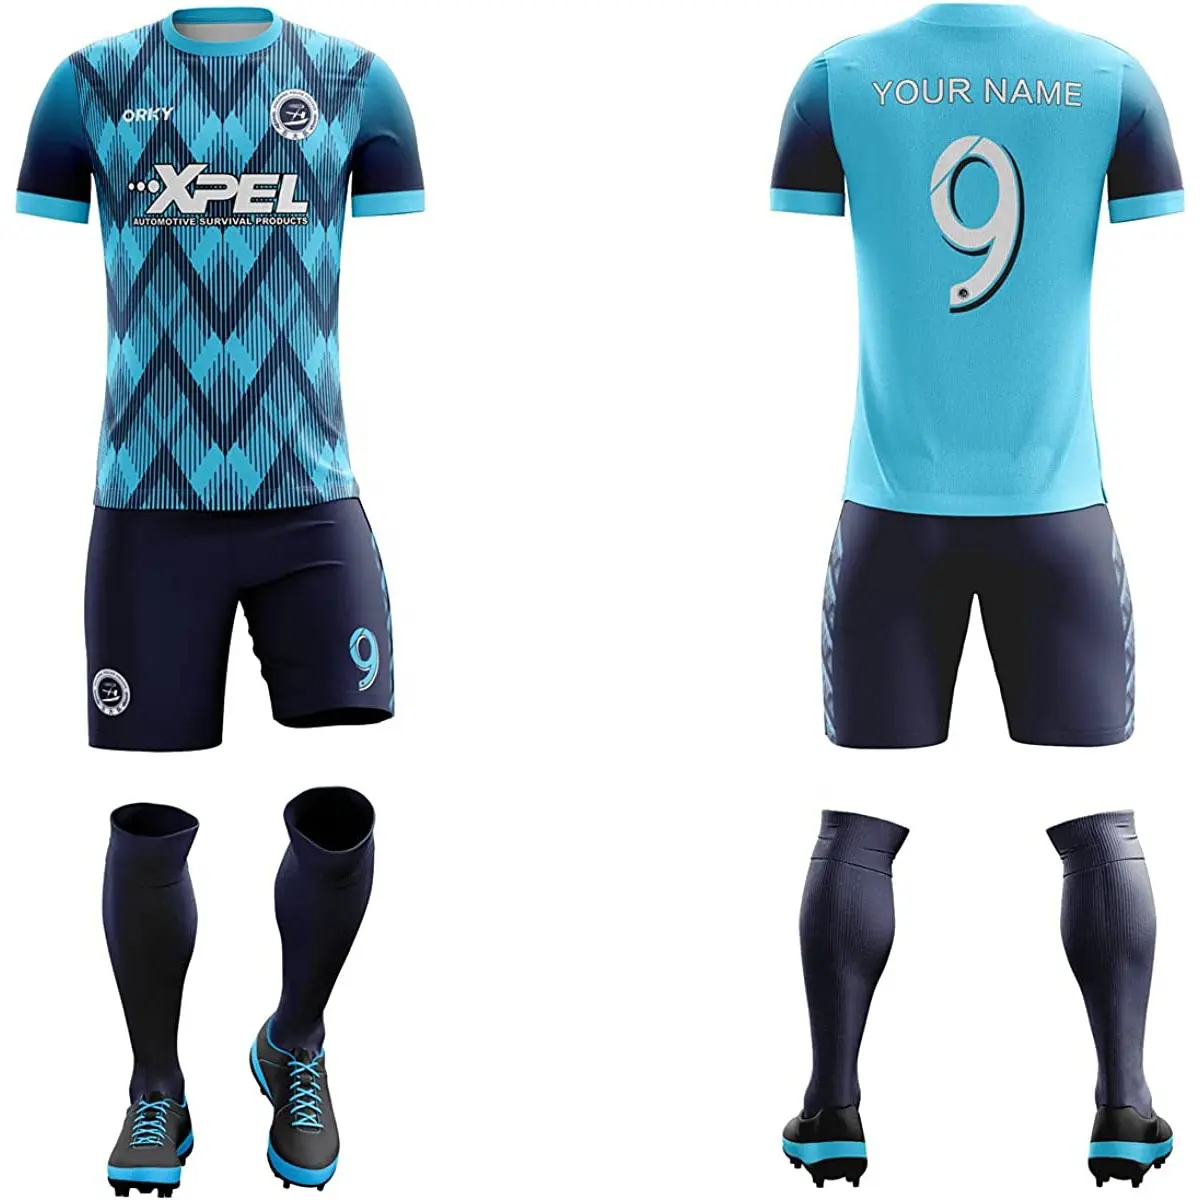 Conjuntos de uniformes de fútbol de equipo personalizado, uniforme de entrenamiento de fútbol de malla transpirable de secado rápido con logotipo impreso en blanco